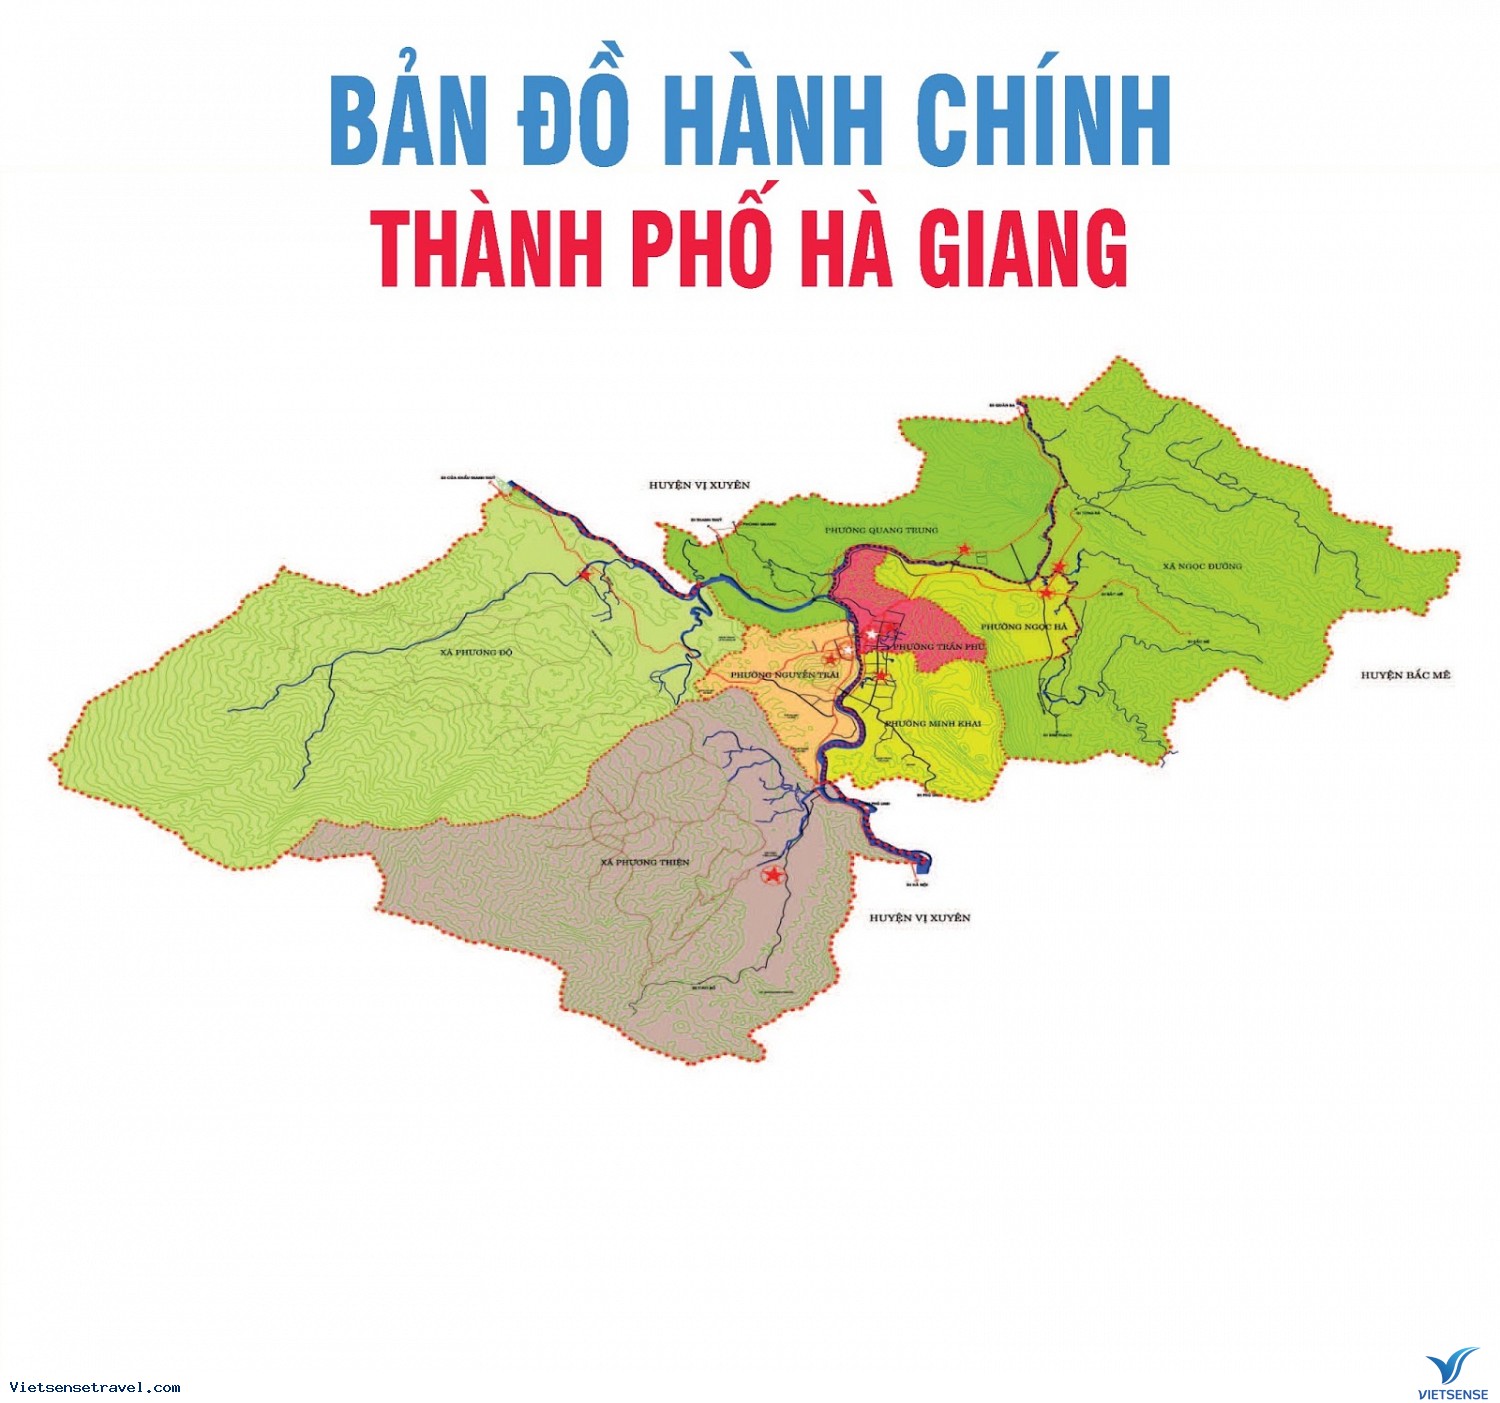 Bản đồ các đơn vị hành chính huyện thị thành của tỉnh Hà Giang  ÔN  THI ĐỊA LÝ  NUTS Xinh Đẹp Ăn là Vui